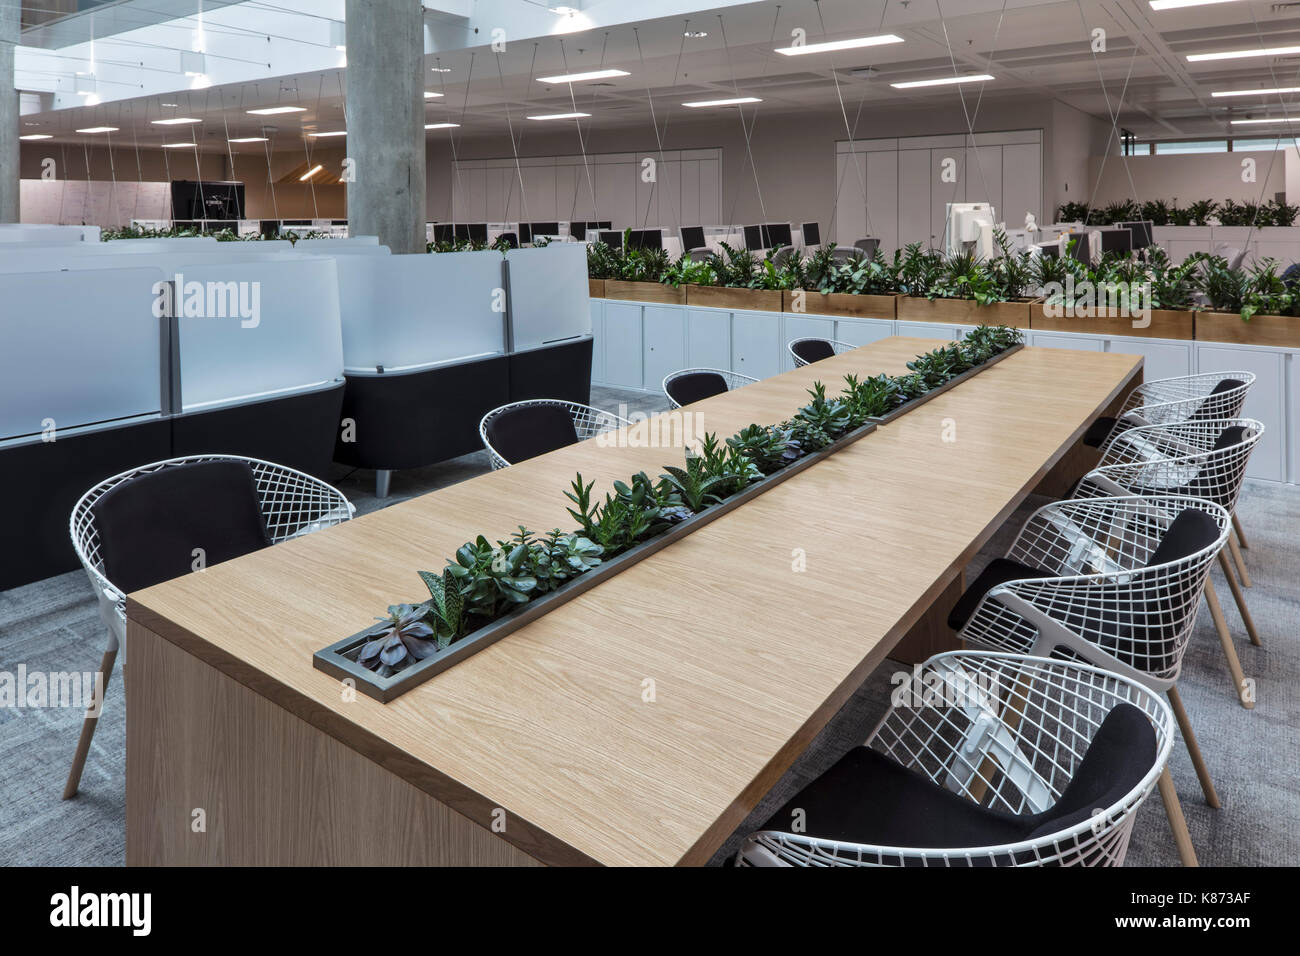 Bureau communal dans l'atrium. YOOX Net-A-Porter Bureaux, Londres, Royaume-Uni. Architecte : Grimshaw, 2017. Banque D'Images